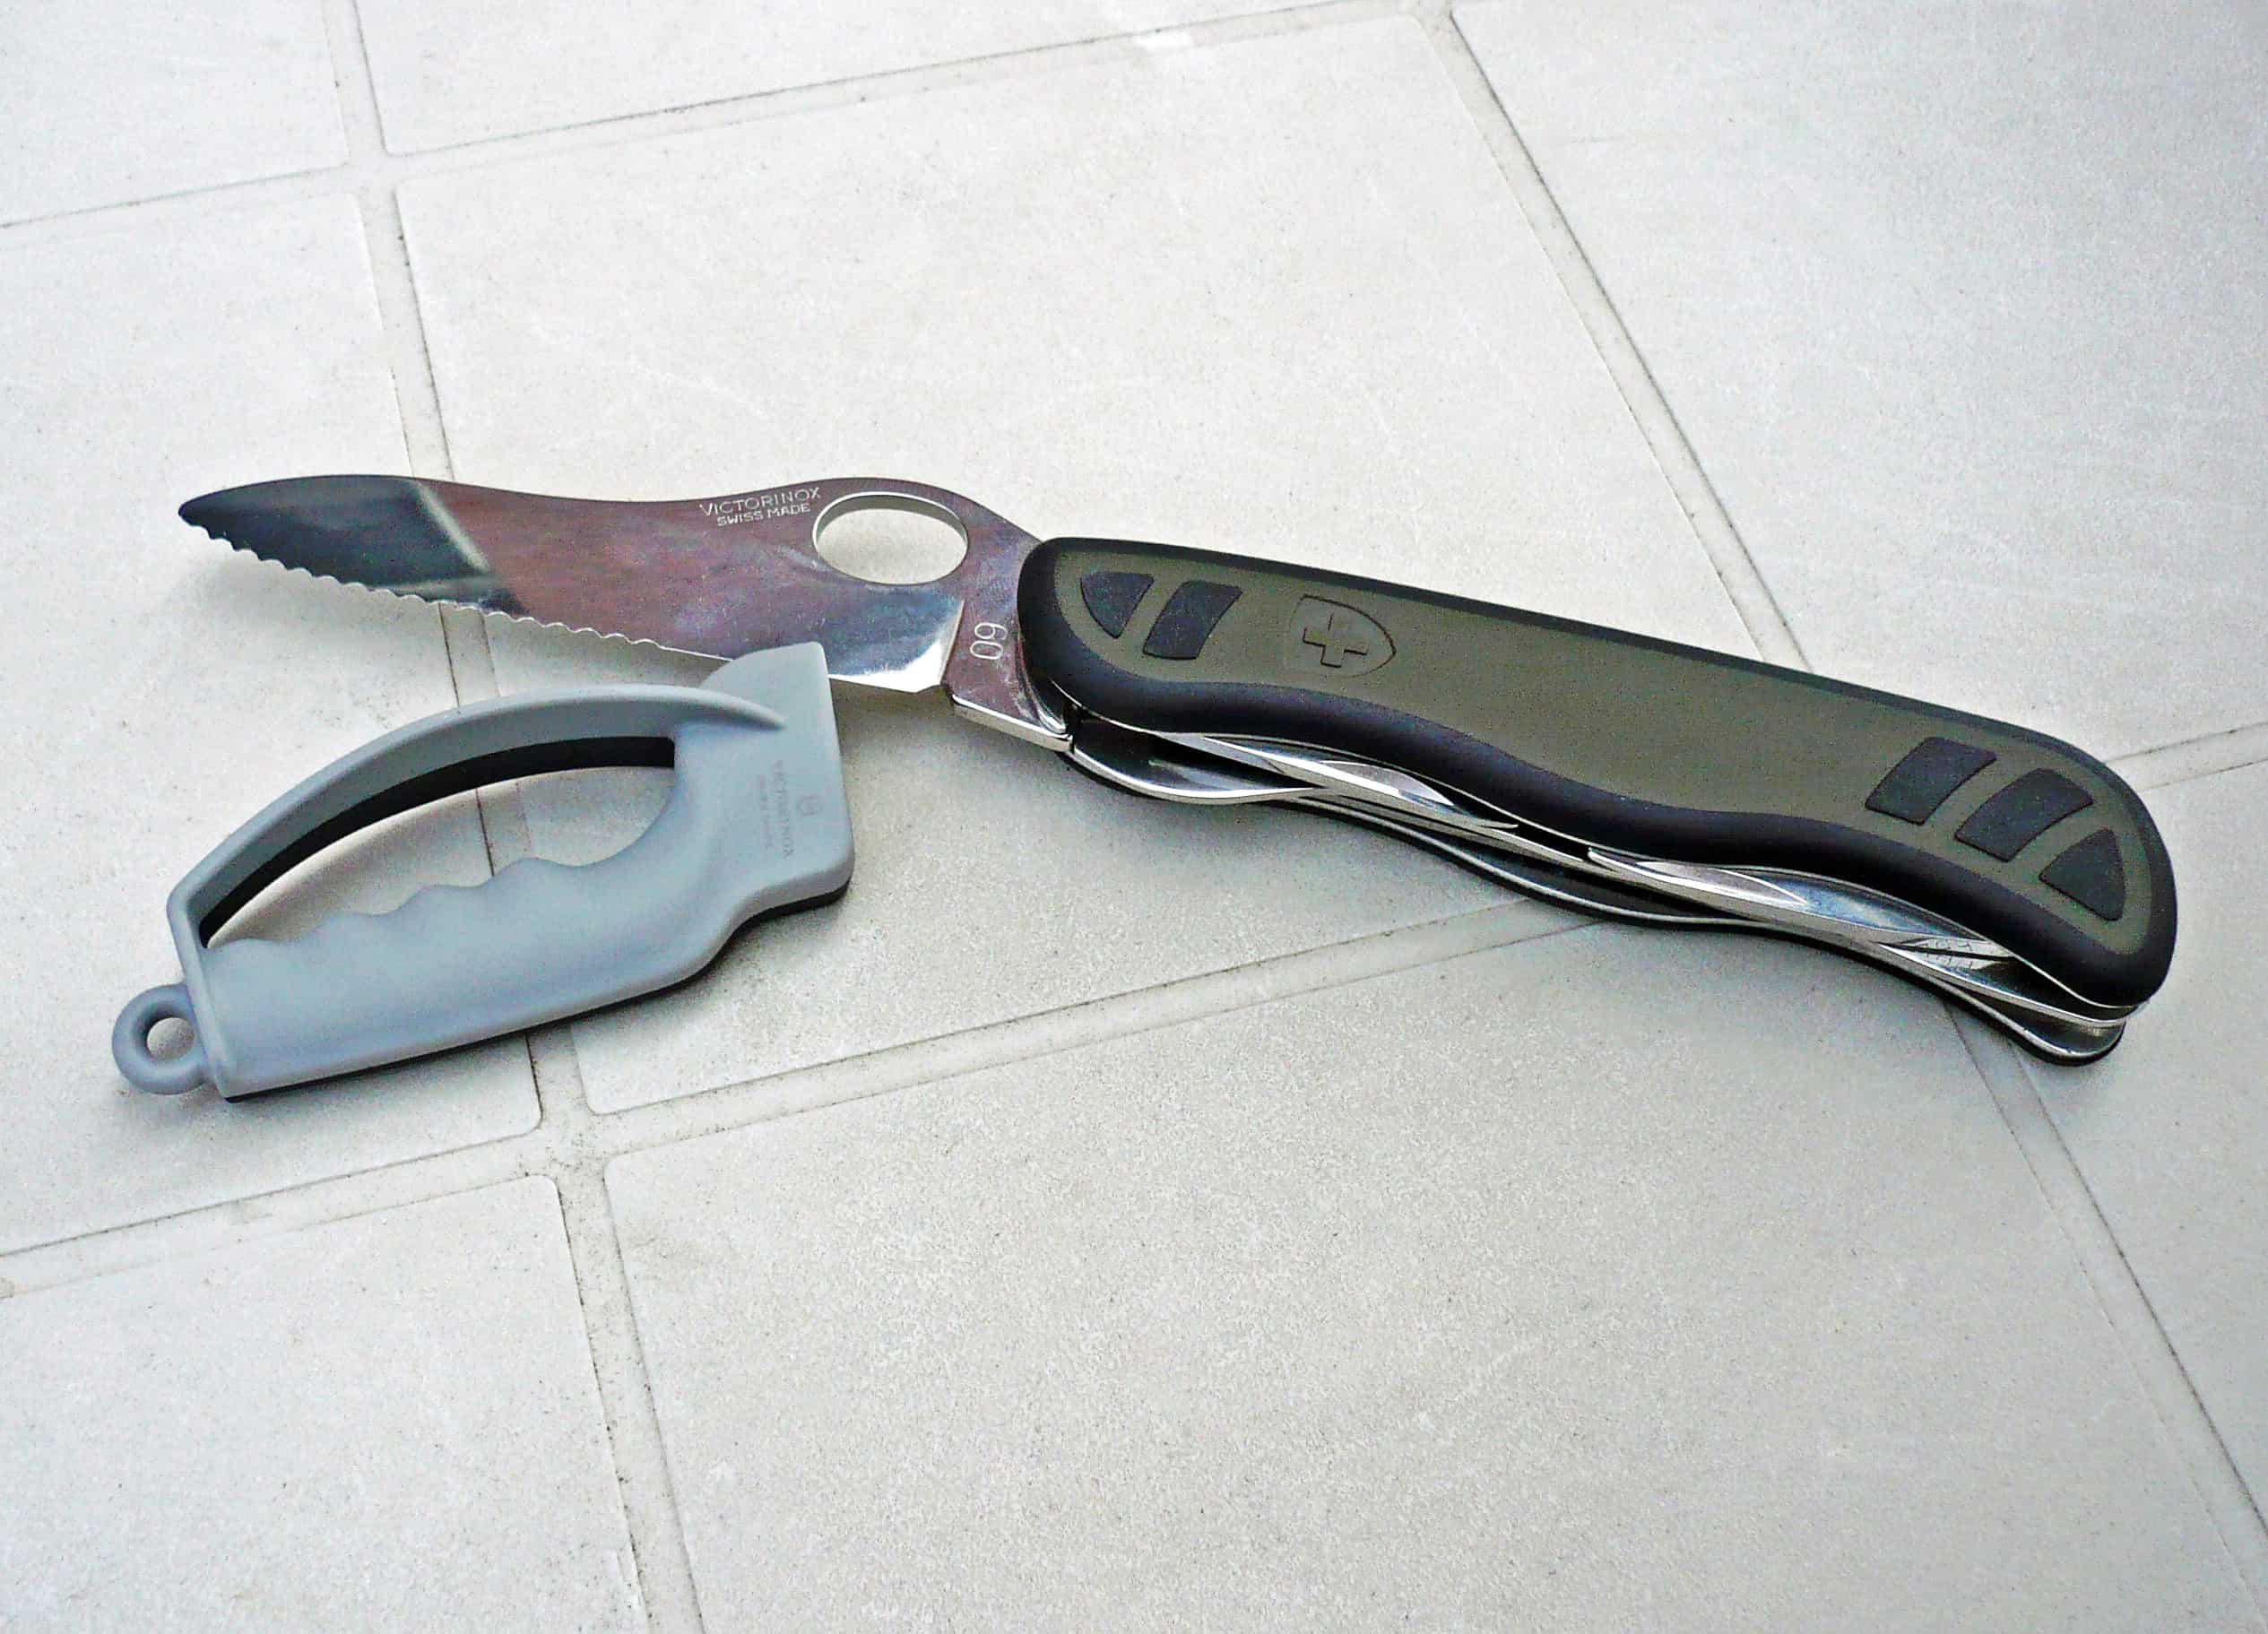 Knife Sharpener, How to sharpen a pocket knife